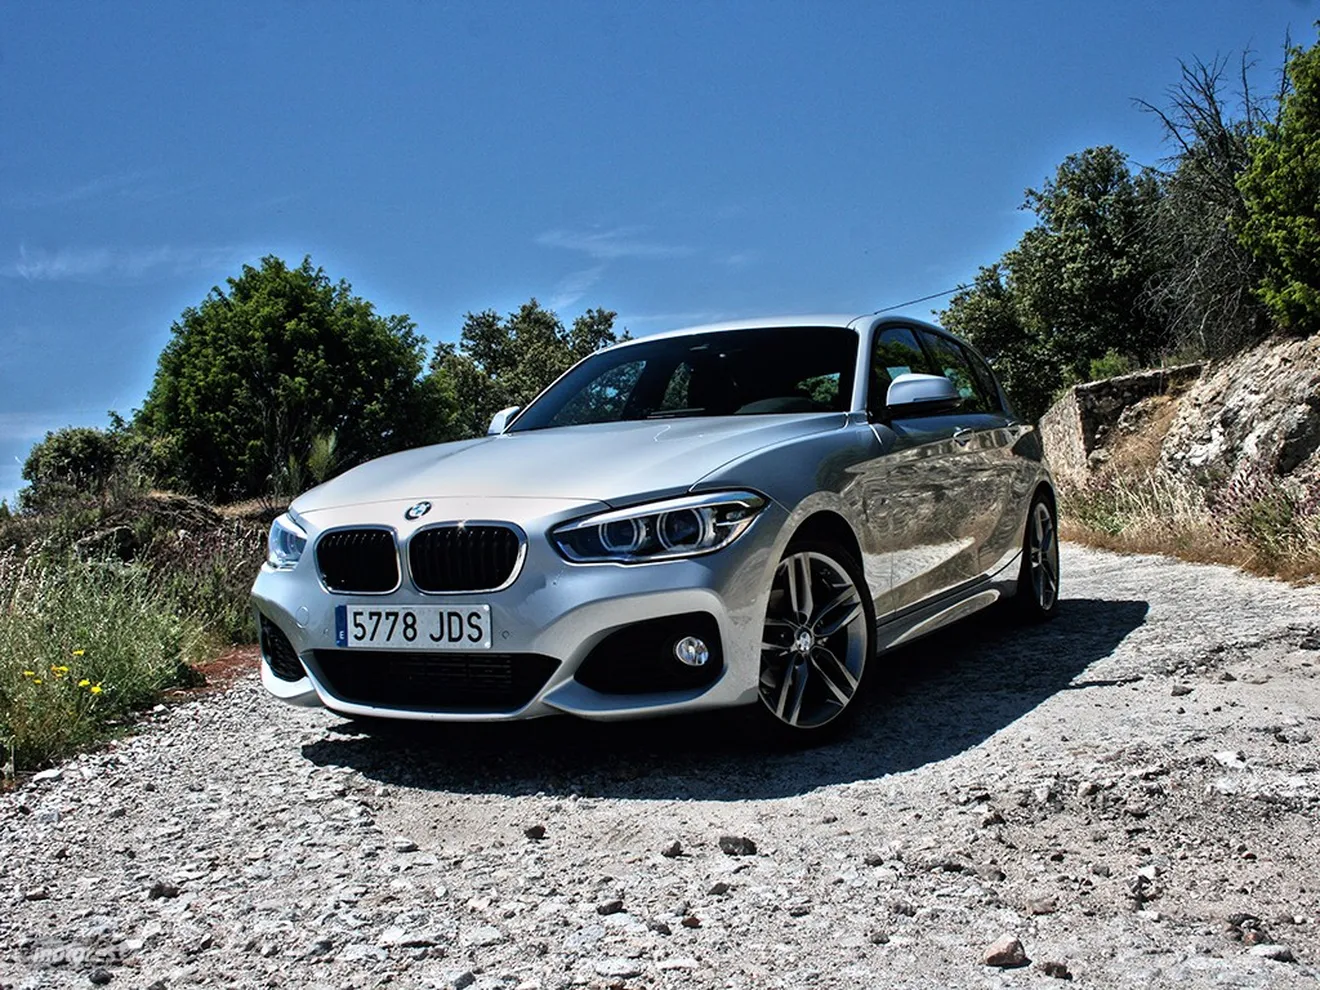 Presentación BMW Serie 1 2015 (I): Gama, equipamiento y precios